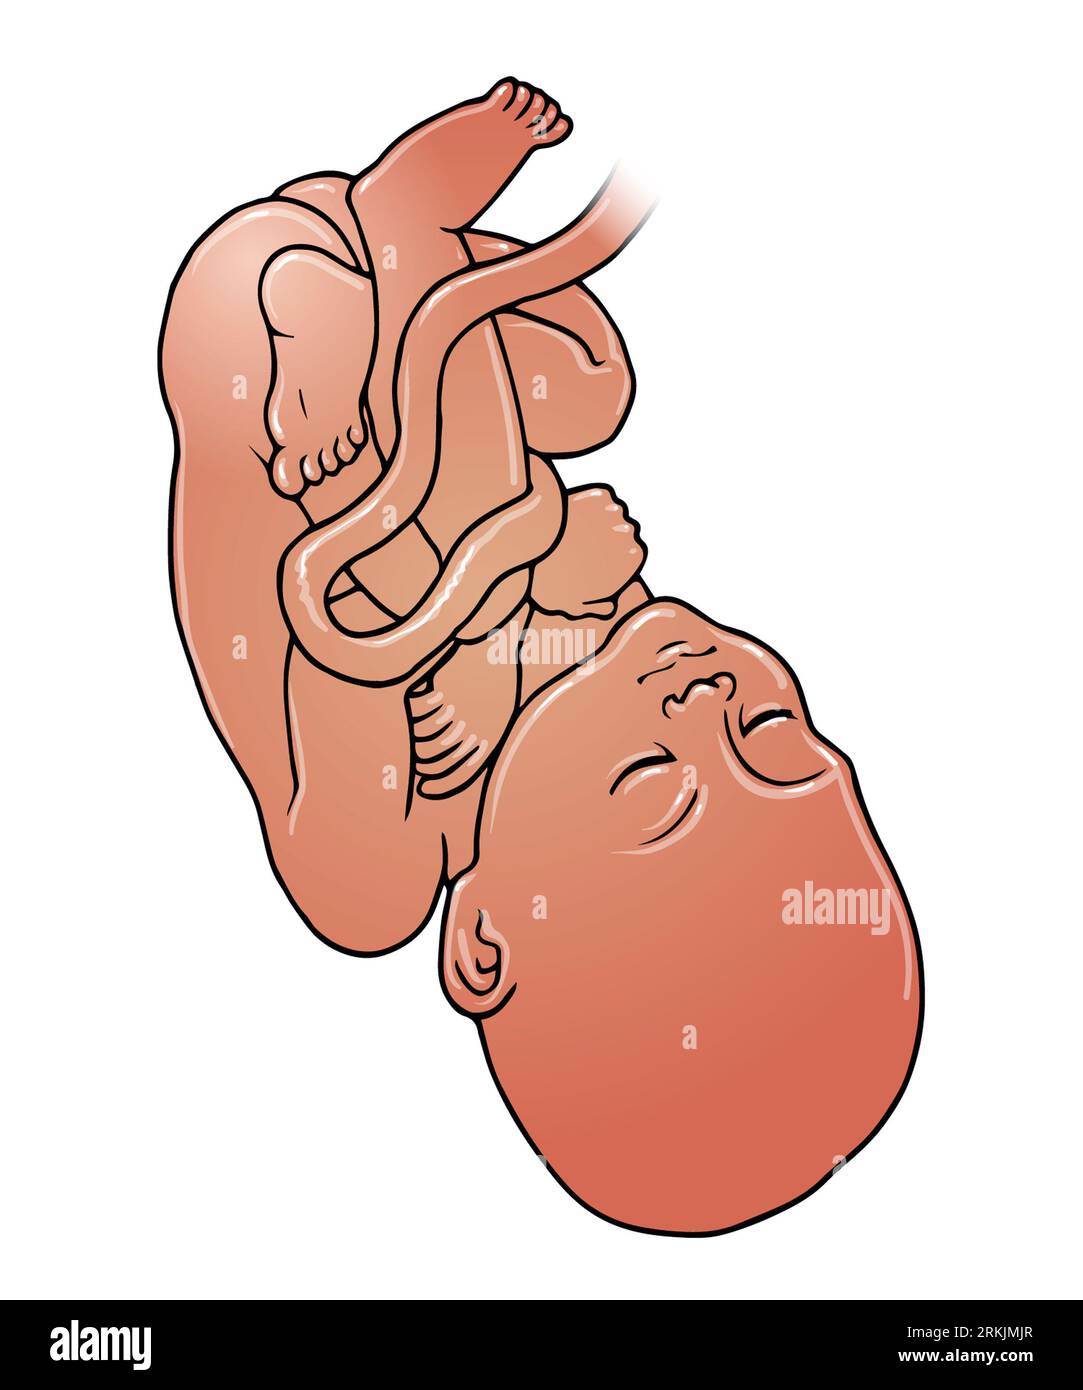 Kunstdarstellung eines dunkelhäutigen Fetus, eines Babys in einer Schädelpräsentation, die zwischen 32-36 Wochen auftreten kann, einer Schwangerschaft, einer Geburt des Kindes Stockfoto